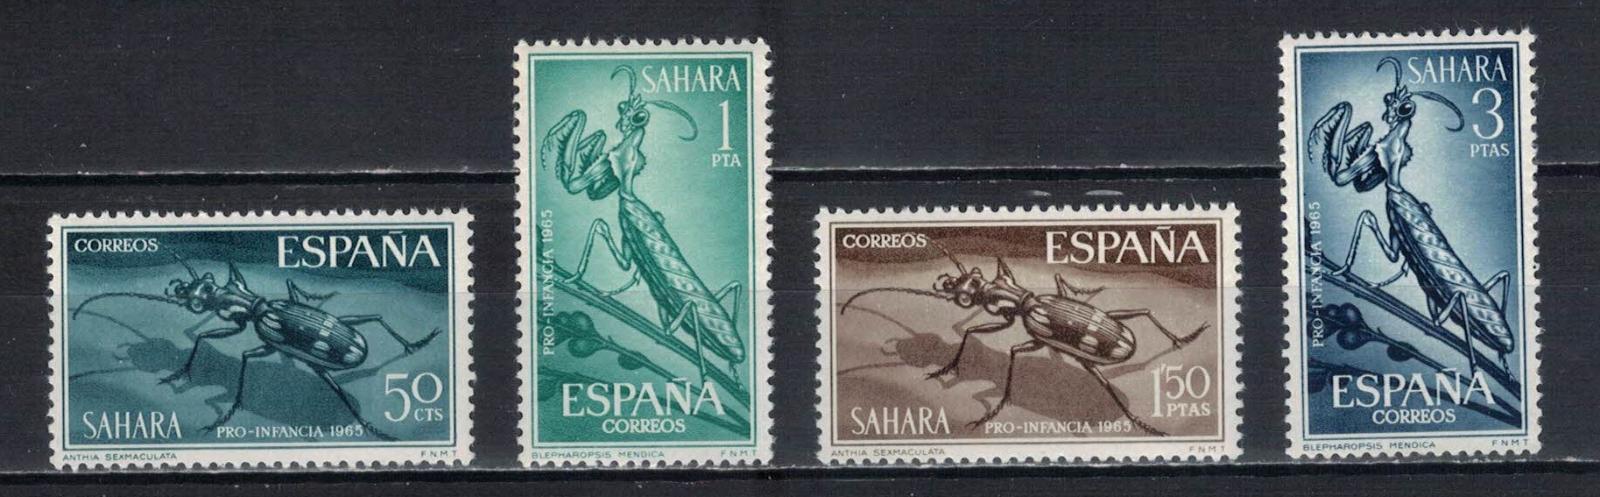 Španielska Sahara 1965 "Pro-Children 1965" - Filatelia